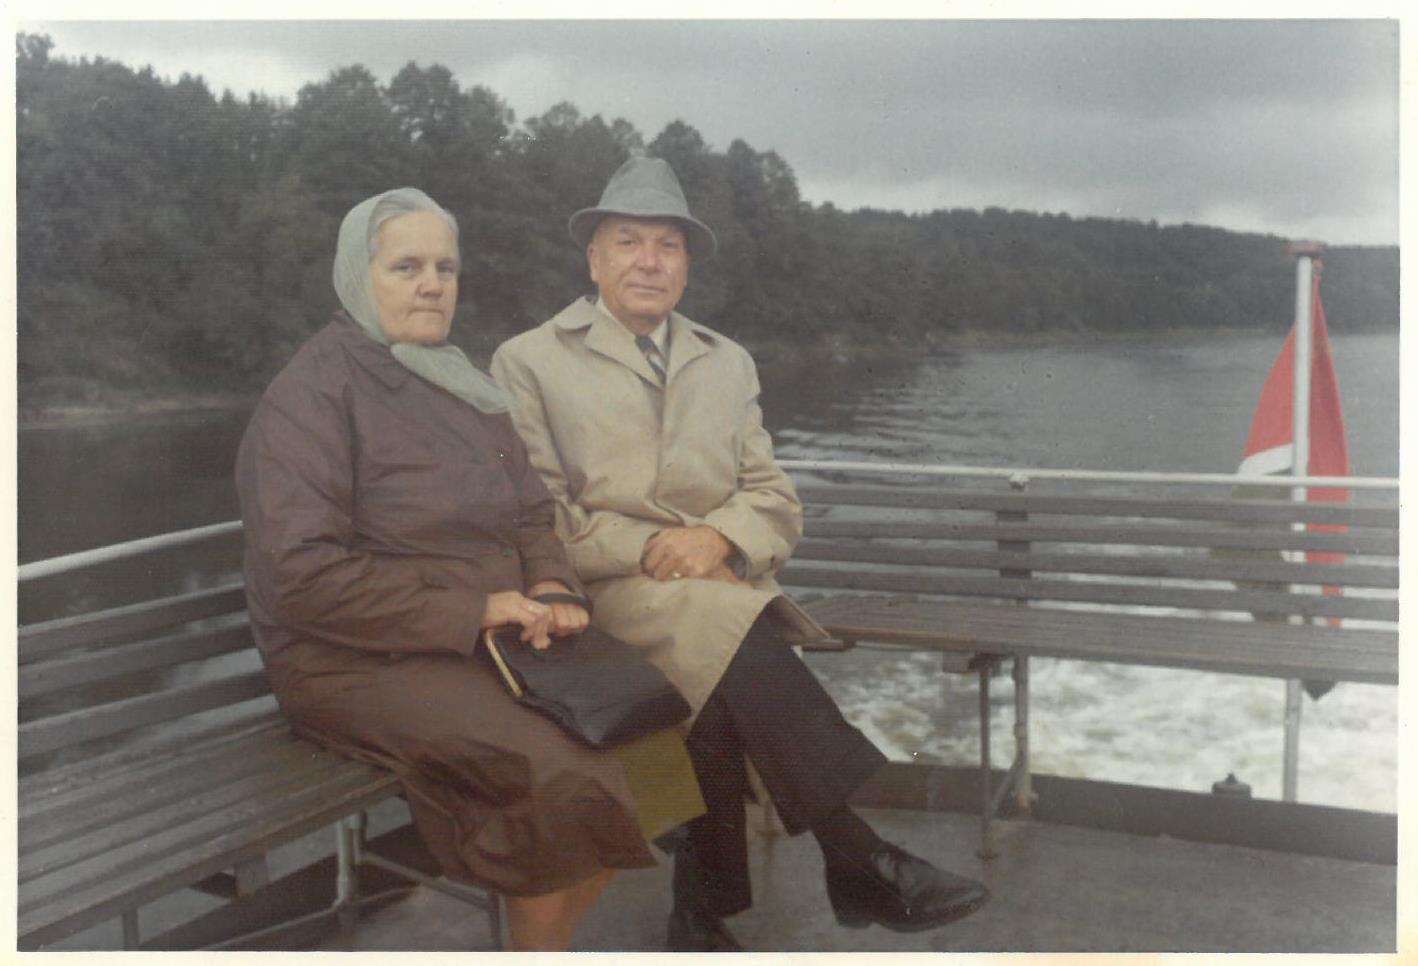 Pirmasis Kazio Balčiūno vizitas Lietuvoje, praleidus ilgus tremties metus Jungtinėse Amerikos Valstijose. K. Balčiūnas su žmona Ona. Druskininkai, 1972 m. rugpjūčio 28 d. 